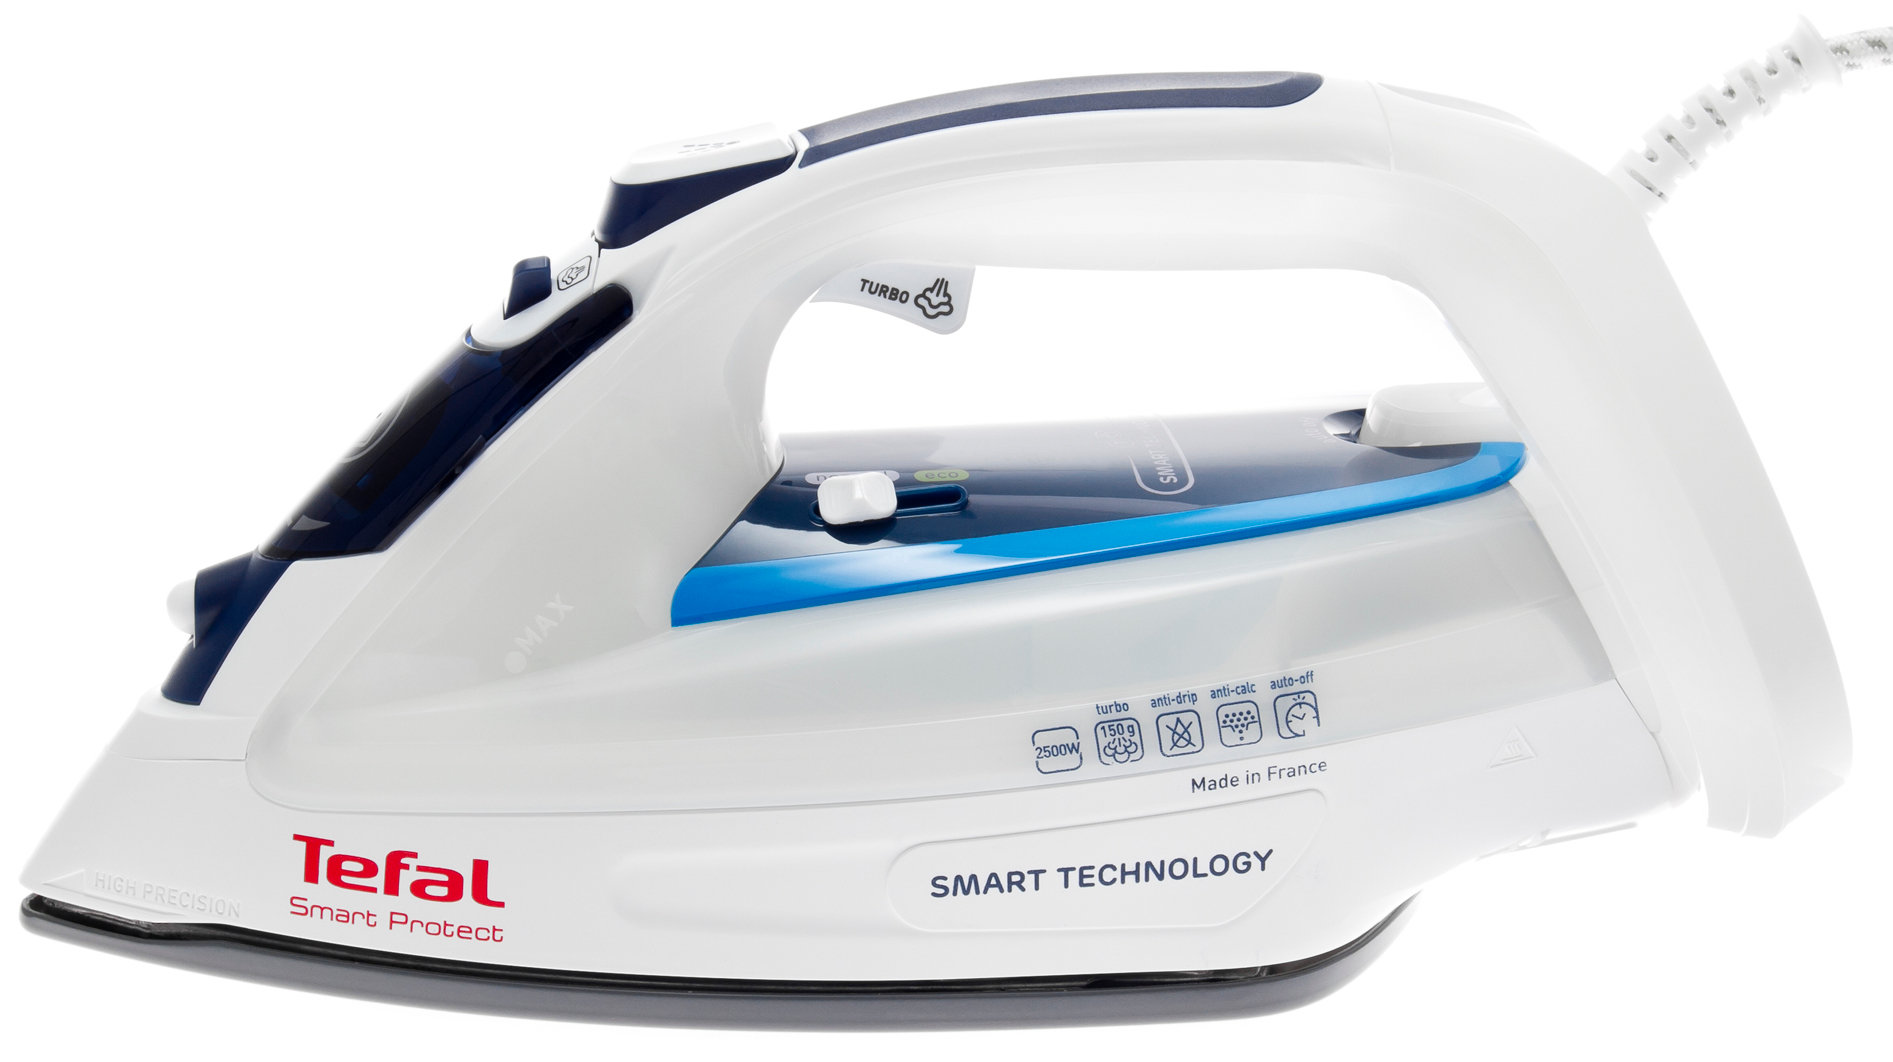 TEFAL Smart Protect FV4970 Żelazko - ceny i opinie w Media Expert